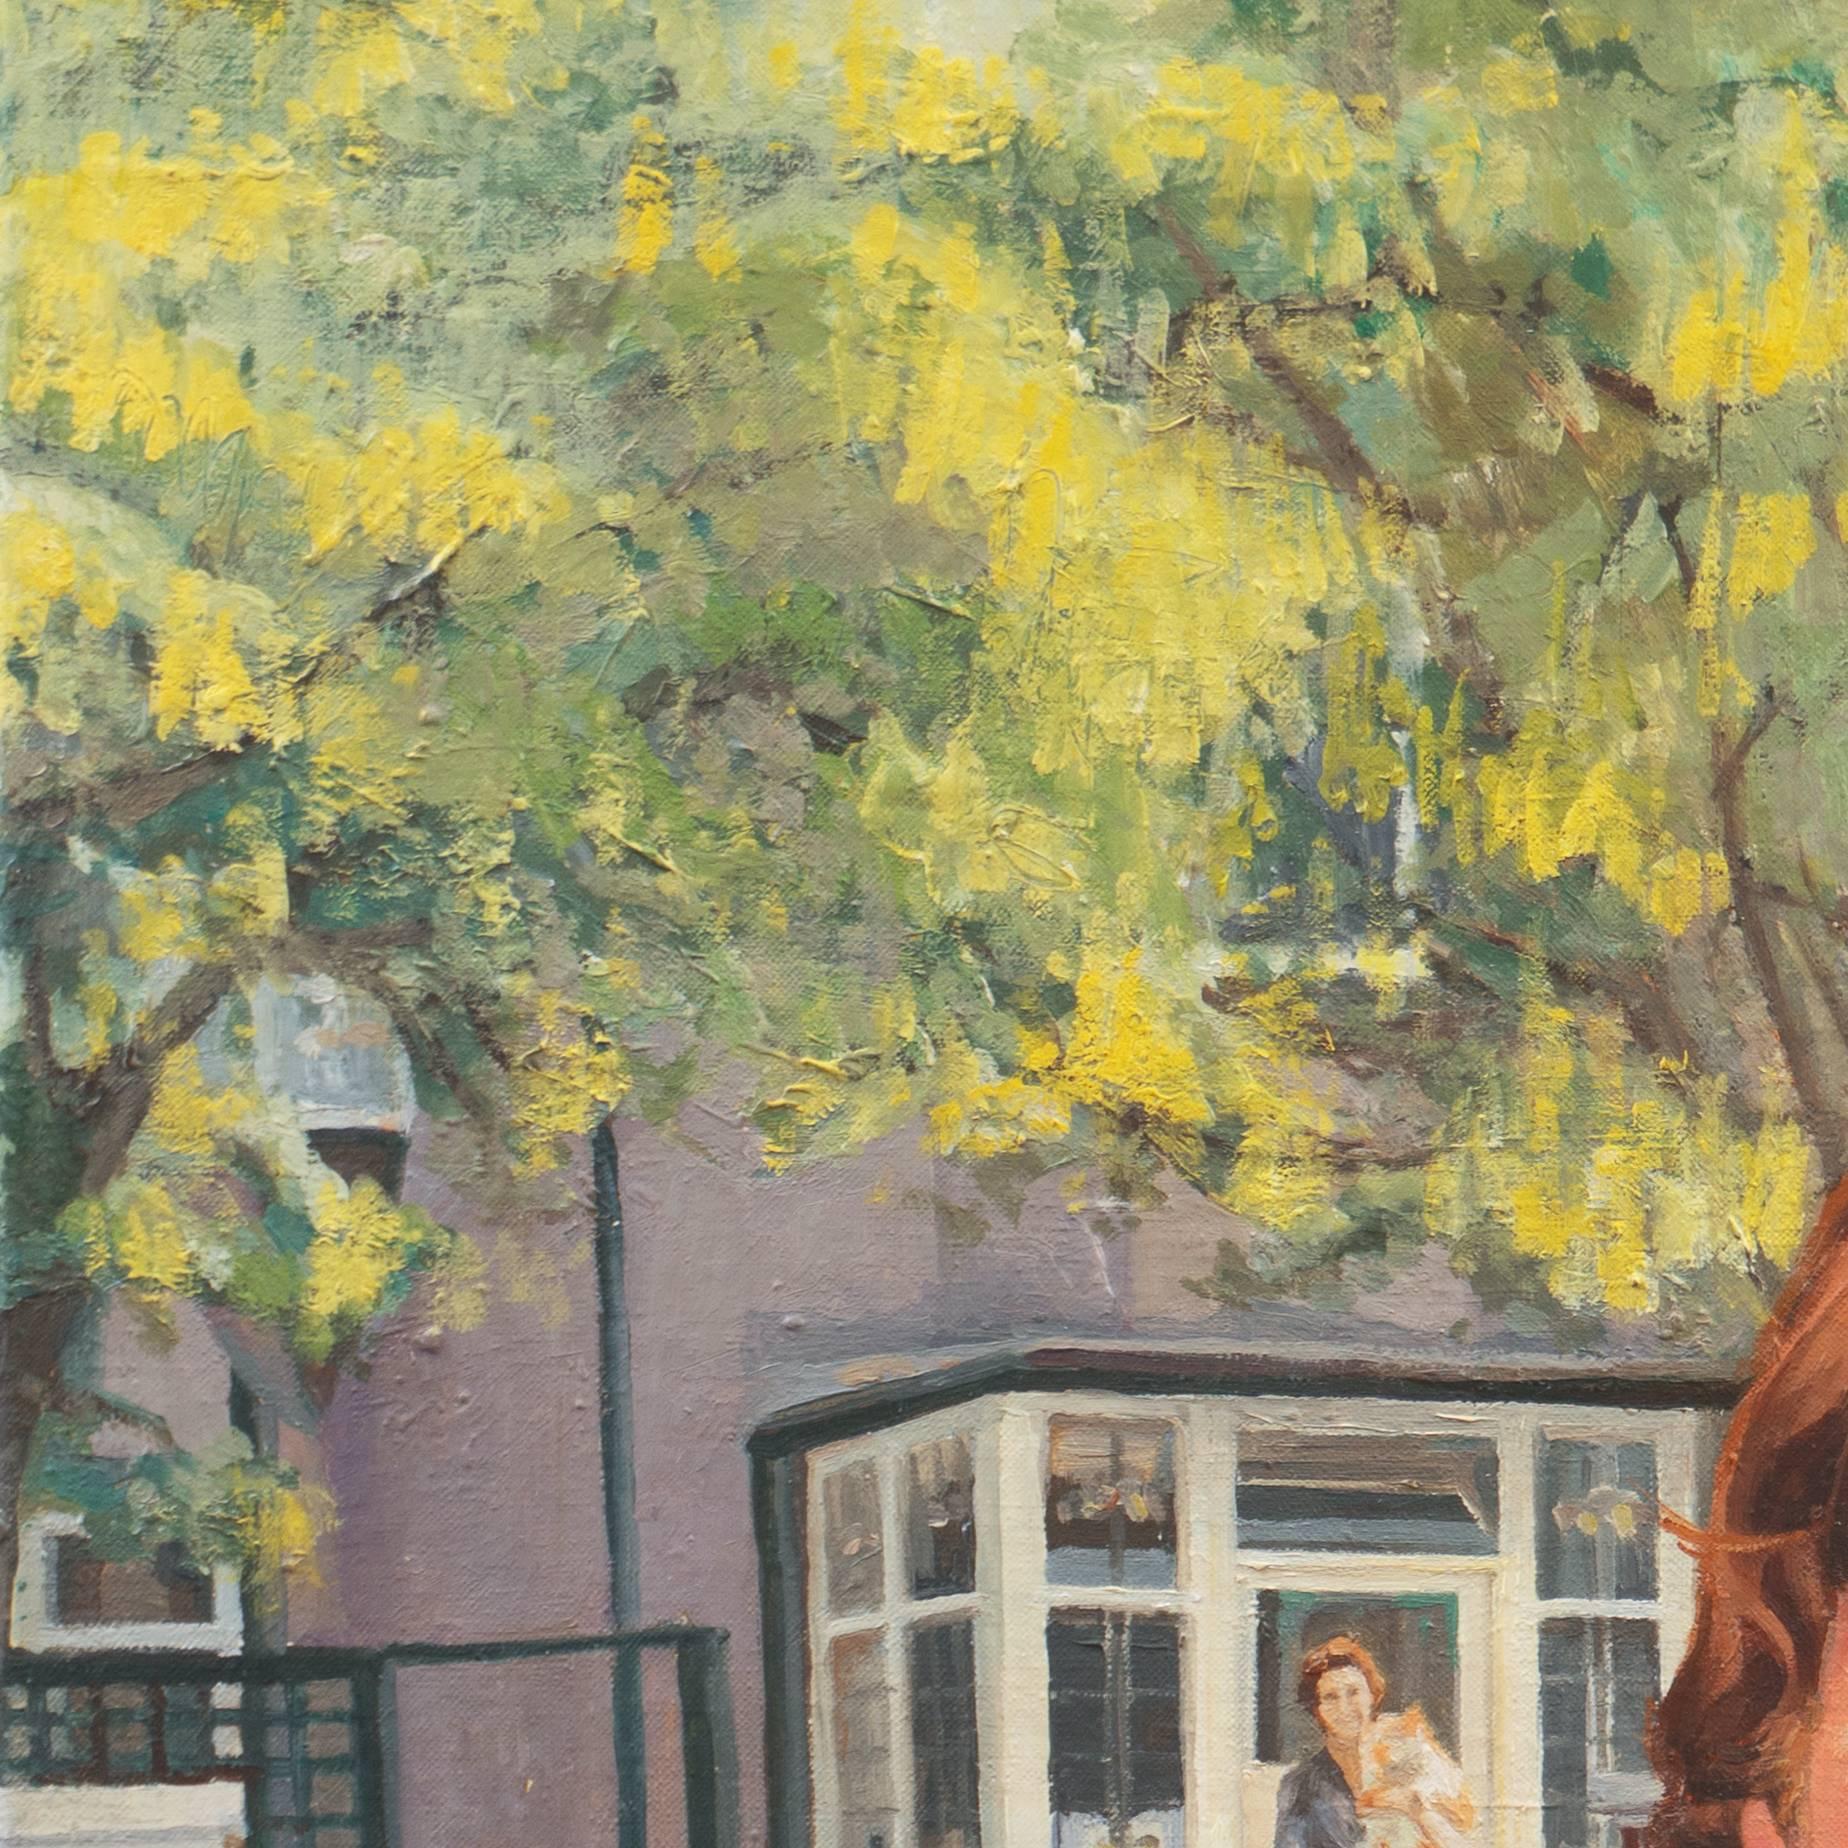 „John und Mimi mit Tim“, John Lennon, England, Manchester College of Art (Impressionismus), Painting, von Stephen Bower